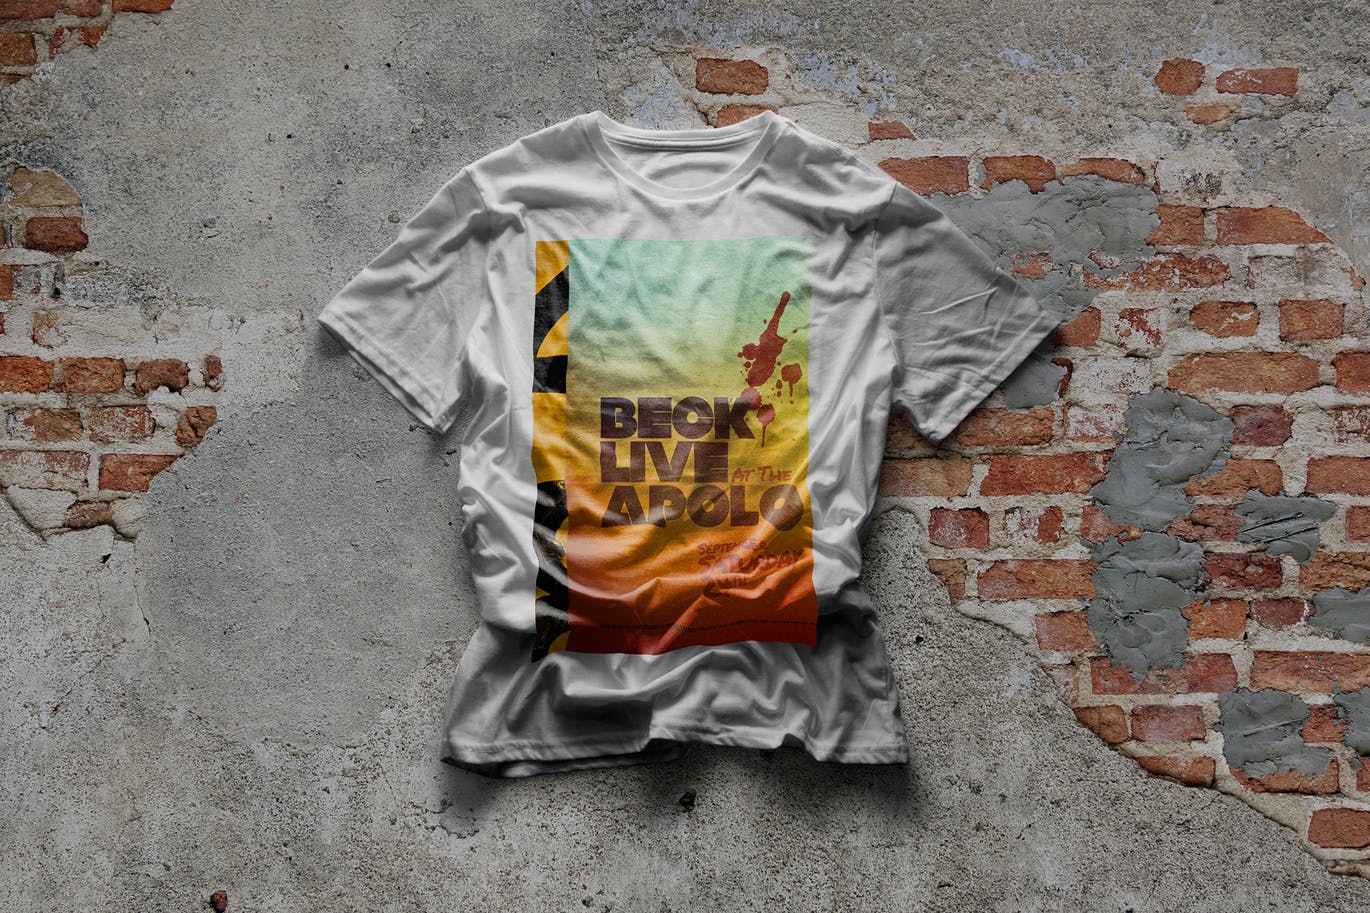 都市风格T恤印花图案设计预览样机第一素材精选 Urban T-Shirt Mock-Up插图(2)